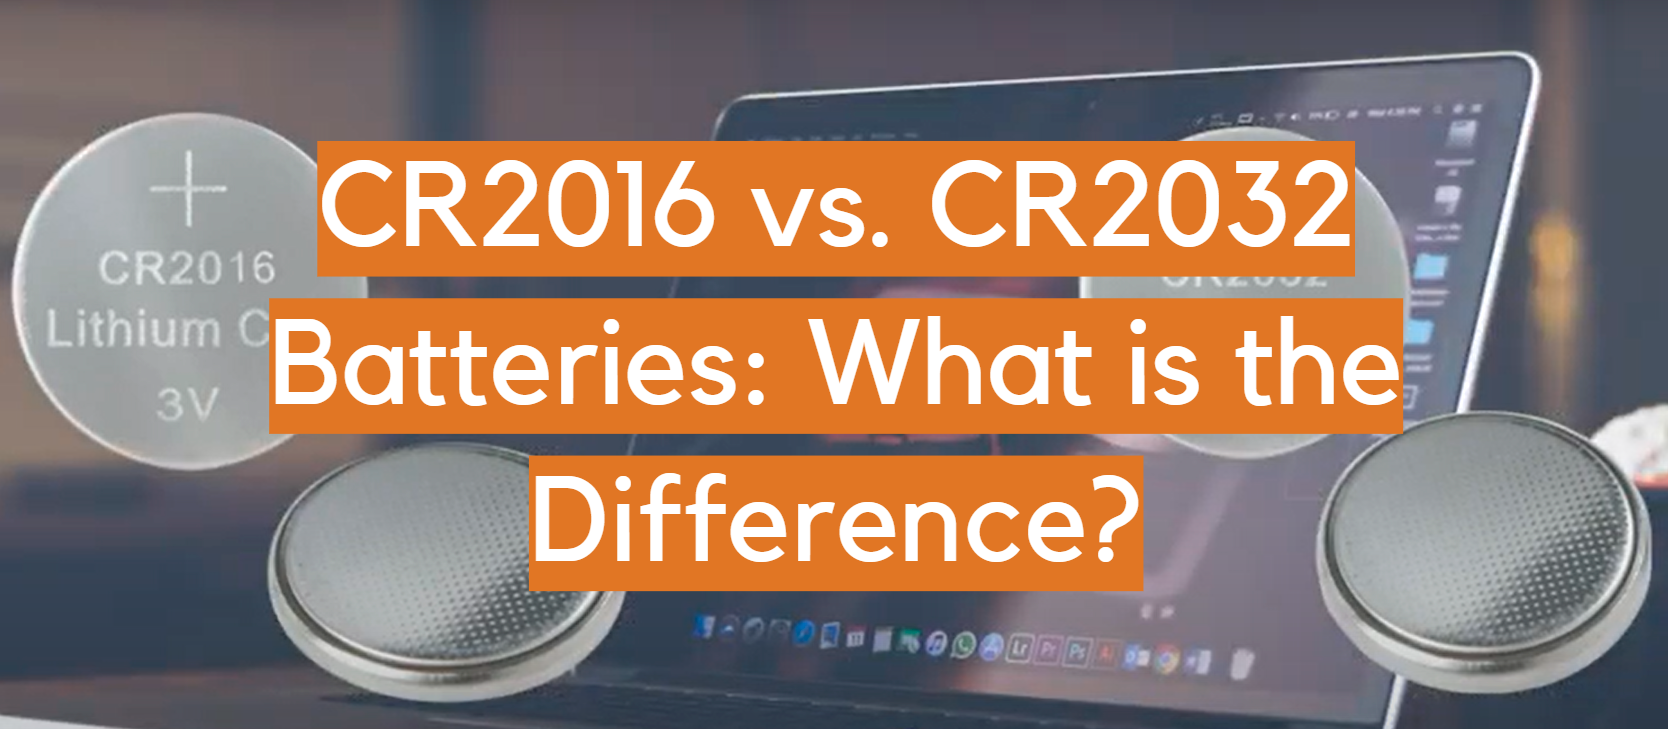 Baterías CR2016 vs. CR2032: ¿Cuál es la diferencia?